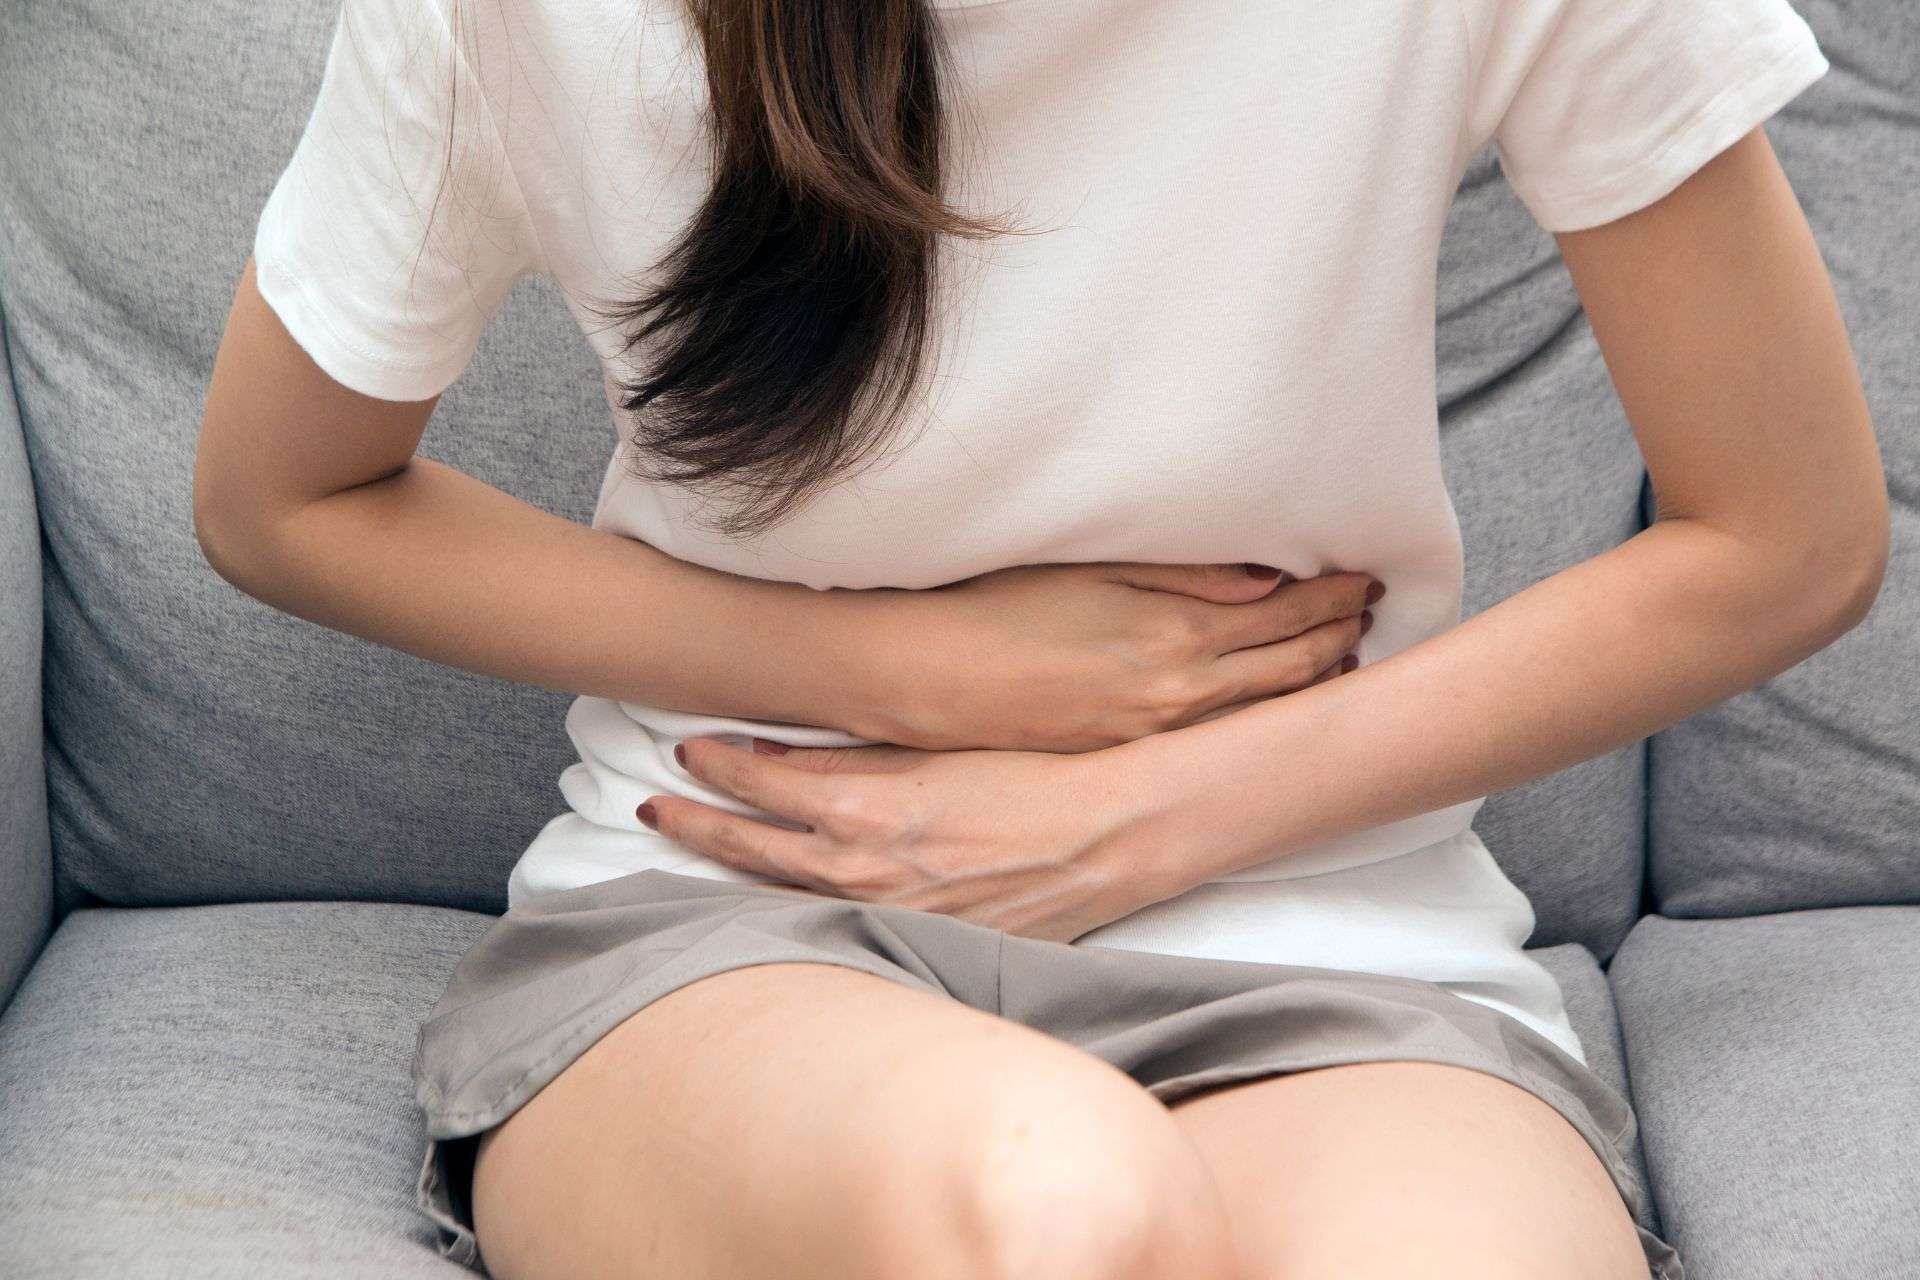 L’aria nello stomaco sopra certi limiti può causare turbolenze intestinali